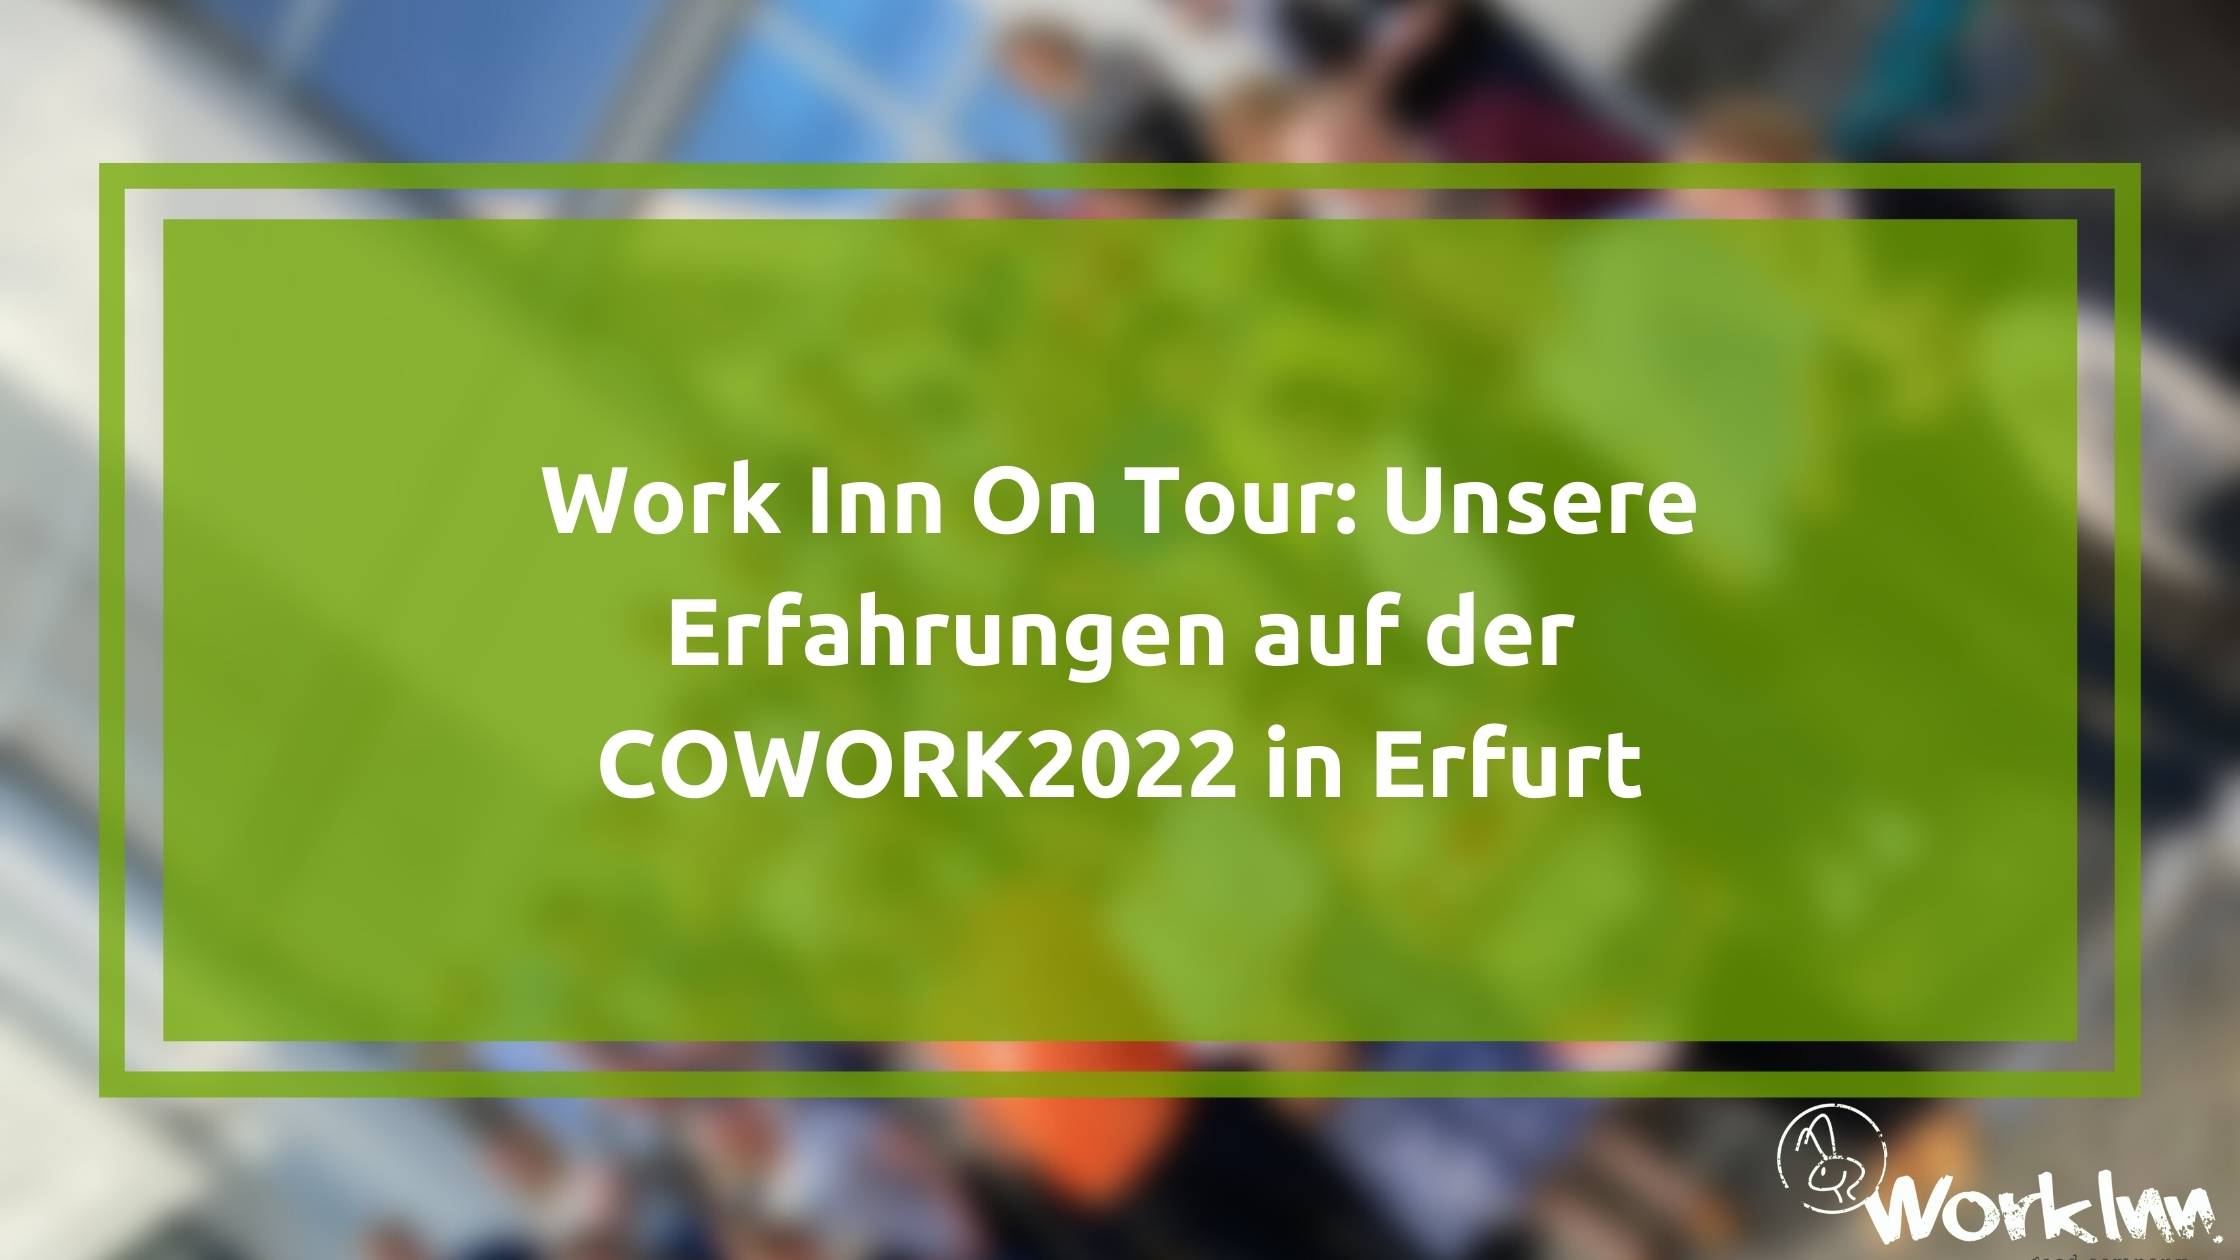 Work Inn On Tour: Unsere Erfahrungen auf der COWORK2022 in Erfurt